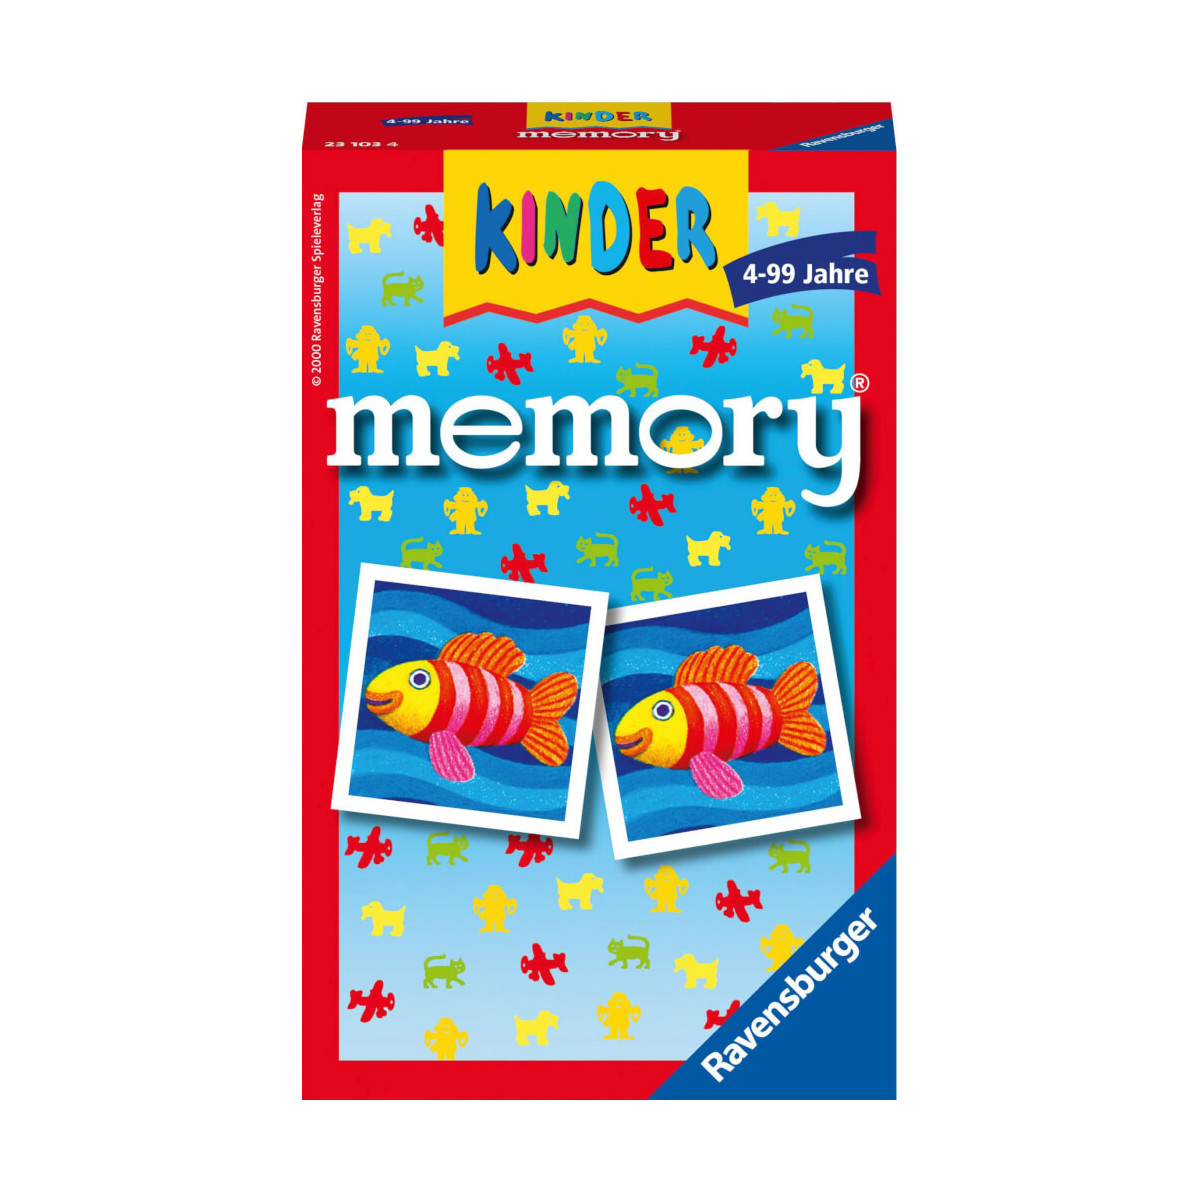 Ravensburger 23103 Kinder memory® Mitbringspiel